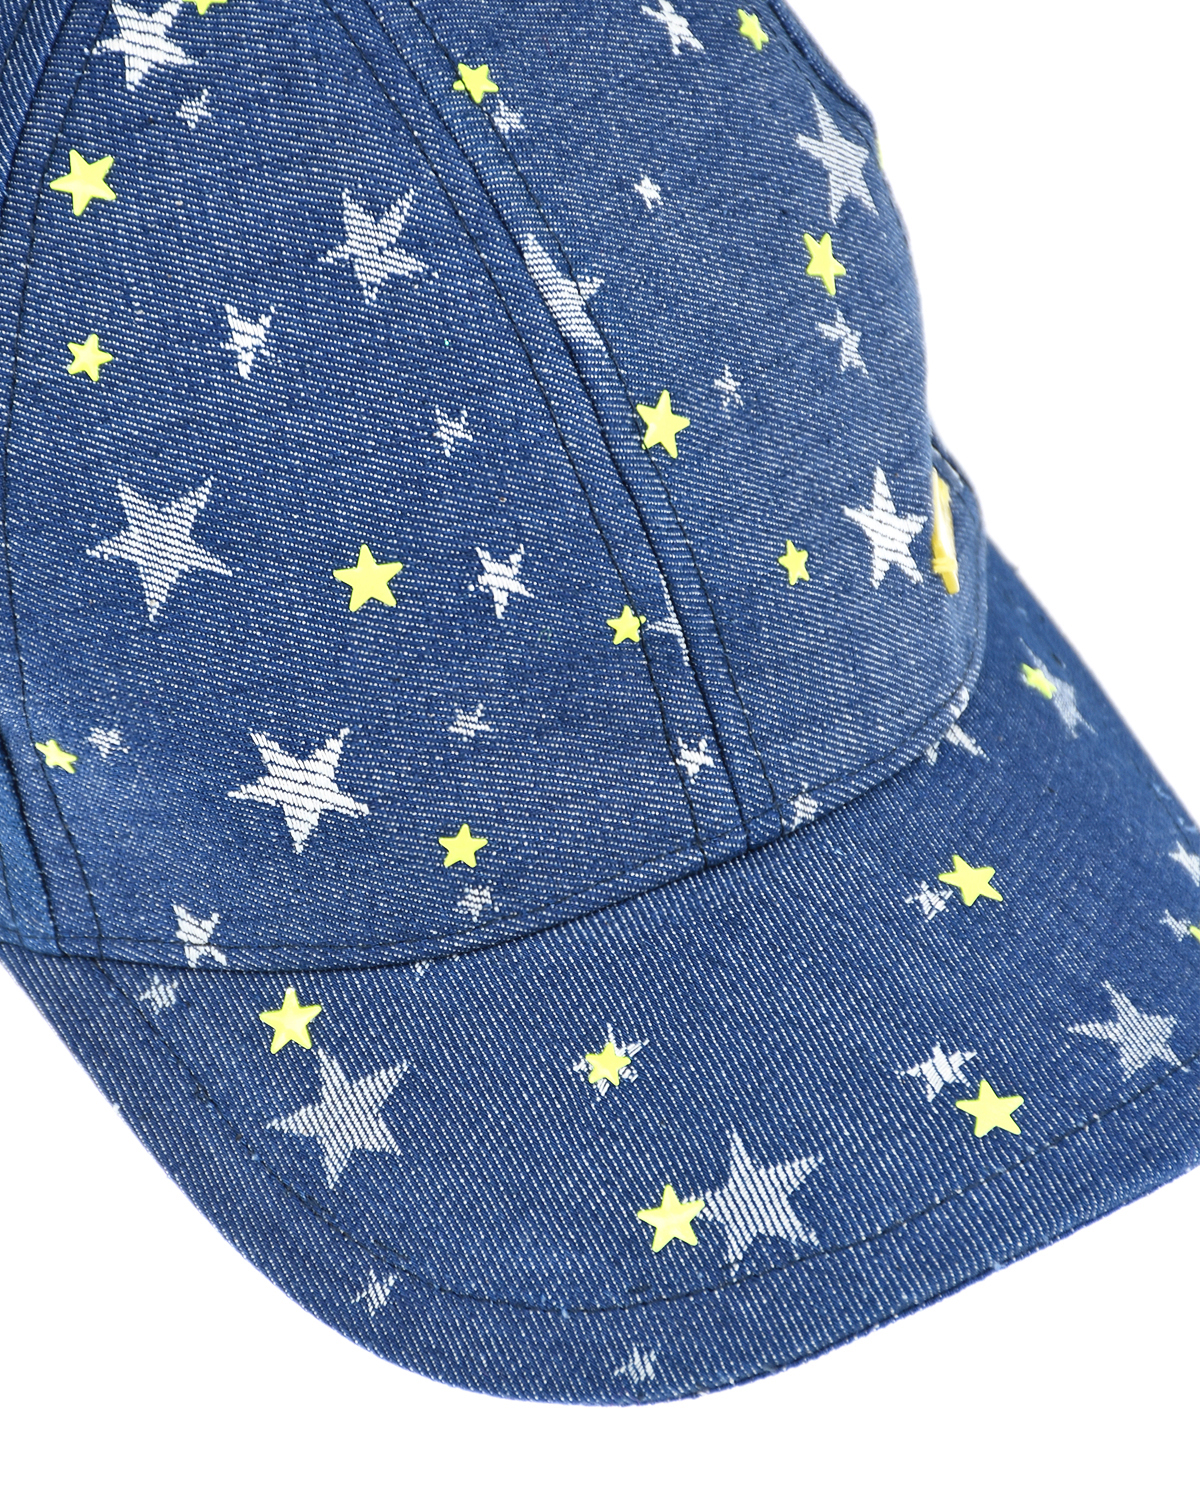 Джинсовая кепка с принтом "Звезды" Il Trenino детская, размер 52, цвет синий - фото 3